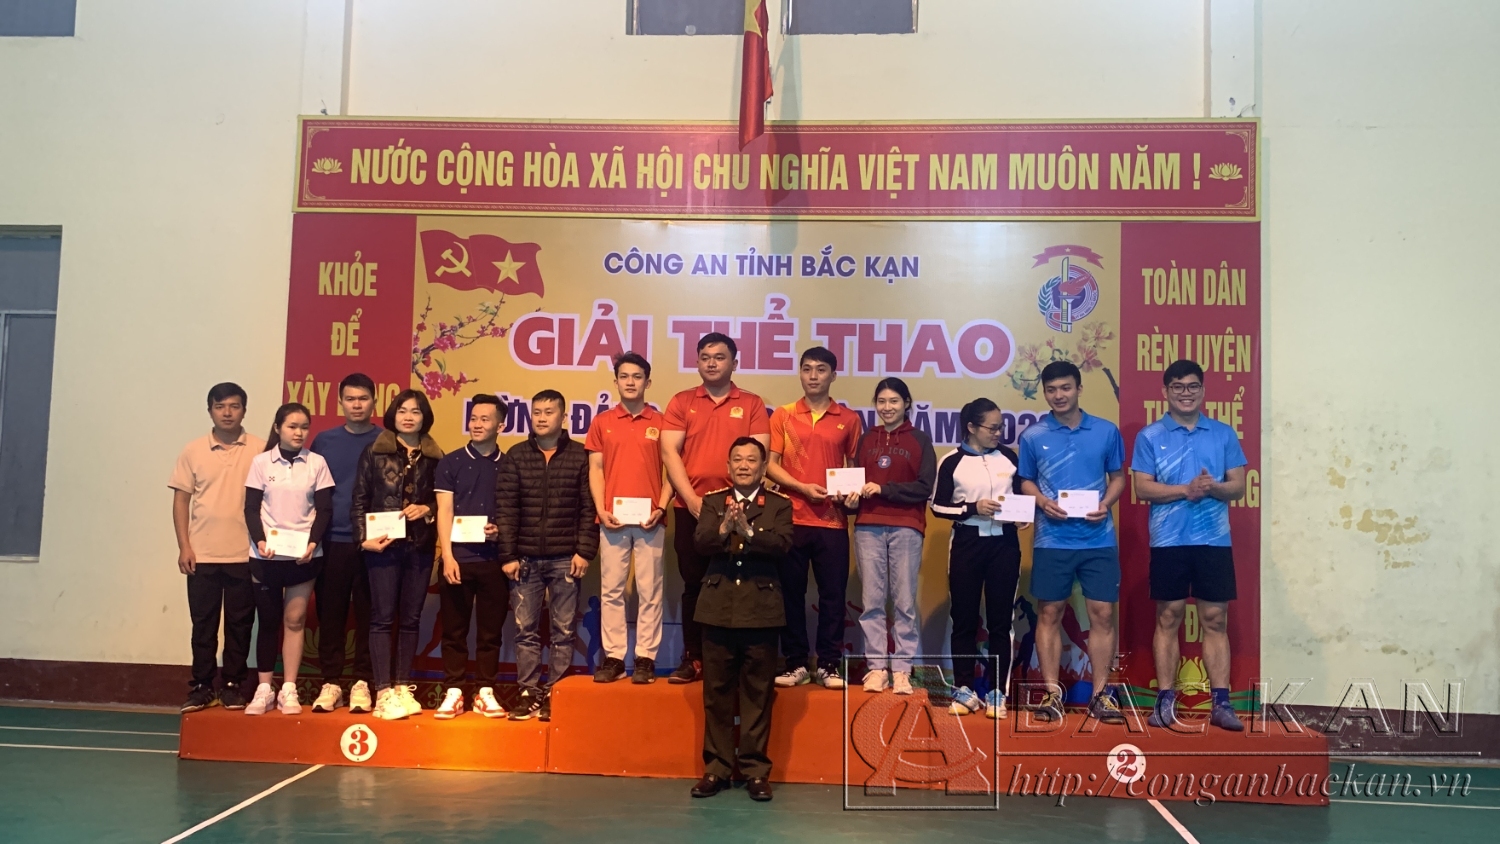 Đại tá Đinh Quang Huy – Phó Giám đốc Công an tỉnh trao giải cho các vận động viên thi đấu môn Cầu lông